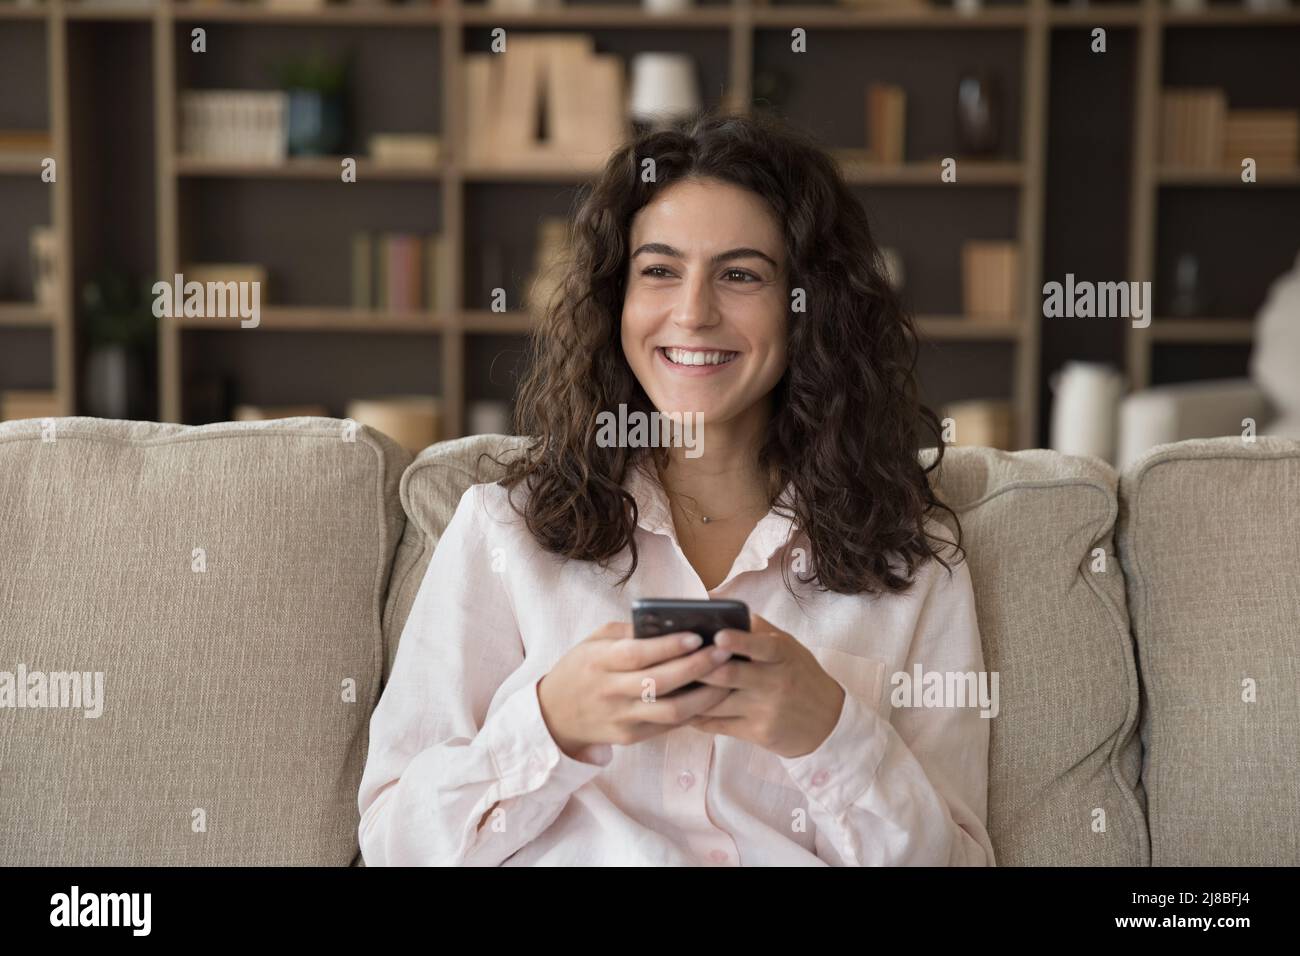 Frau sitzt auf dem Sofa und Smartphones starren zur Seite und sehen glücklich aus Stockfoto